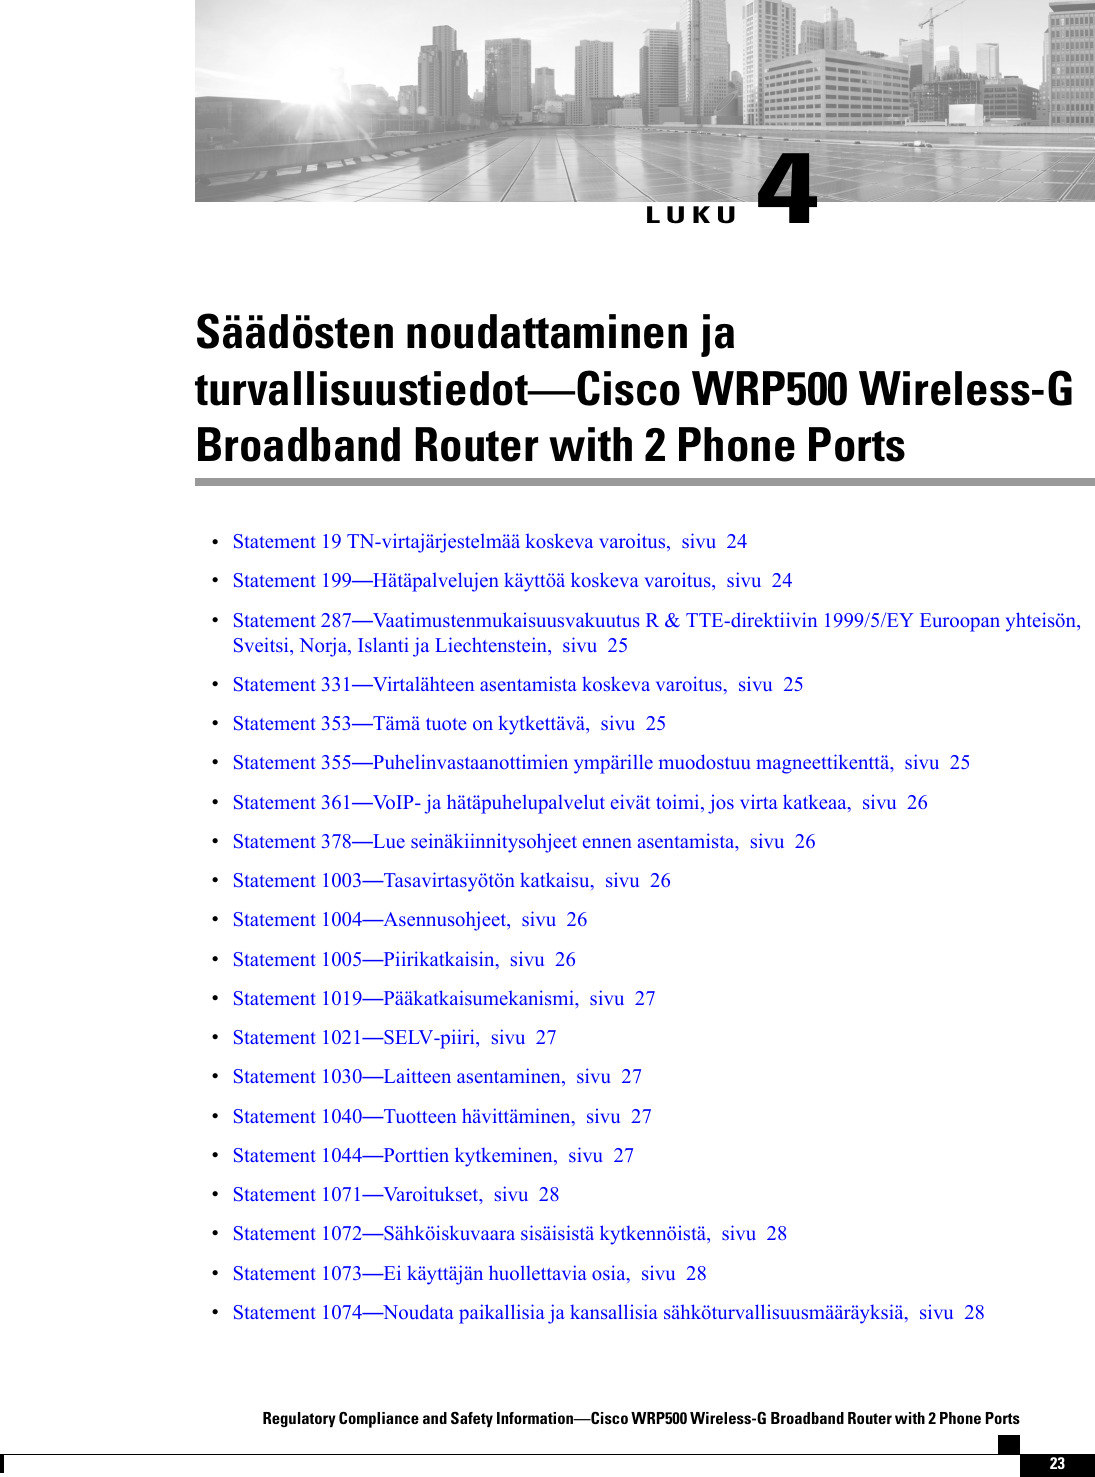 LUKU 4Säädösten noudattaminen jaturvallisuustiedotCisco WRP500 Wireless-GBroadband Router with 2 Phone PortsStatement 19 TN-virtajärjestelmää koskeva varoitus, sivu 24Statement 199Hätäpalvelujen käyttöä koskeva varoitus, sivu 24Statement 287Vaatimustenmukaisuusvakuutus R &amp; TTE-direktiivin 1999/5/EY Euroopan yhteisön,Sveitsi, Norja, Islanti ja Liechtenstein, sivu 25Statement 331Virtalähteen asentamista koskeva varoitus, sivu 25Statement 353Tämä tuote on kytkettävä, sivu 25Statement 355Puhelinvastaanottimien ympärille muodostuu magneettikenttä, sivu 25Statement 361VoIP- ja hätäpuhelupalvelut eivät toimi, jos virta katkeaa, sivu 26Statement 378Lue seinäkiinnitysohjeet ennen asentamista, sivu 26Statement 1003Tasavirtasyötön katkaisu, sivu 26Statement 1004Asennusohjeet, sivu 26Statement 1005Piirikatkaisin, sivu 26Statement 1019Pääkatkaisumekanismi, sivu 27Statement 1021SELV-piiri, sivu 27Statement 1030Laitteen asentaminen, sivu 27Statement 1040Tuotteen hävittäminen, sivu 27Statement 1044Porttien kytkeminen, sivu 27Statement 1071Varoitukset, sivu 28Statement 1072Sähköiskuvaara sisäisistä kytkennöistä, sivu 28Statement 1073Ei käyttäjän huollettavia osia, sivu 28Statement 1074Noudata paikallisia ja kansallisia sähköturvallisuusmääräyksiä, sivu 28Regulatory Compliance and Safety InformationCisco WRP500 Wireless-G Broadband Router with 2 Phone Ports23